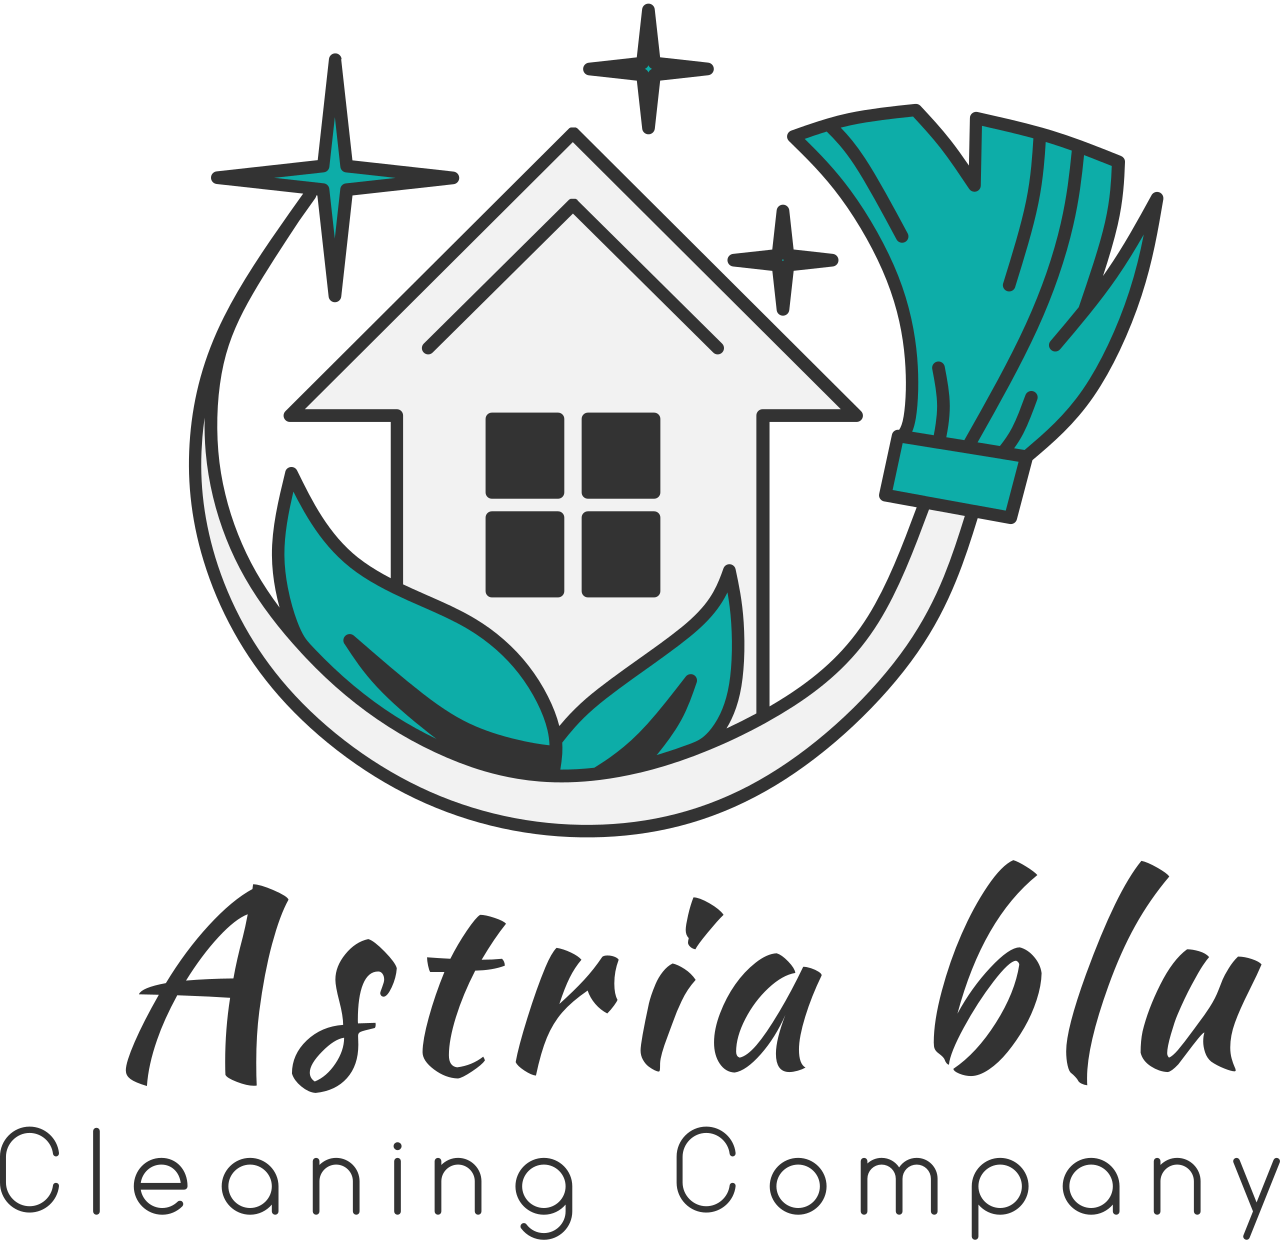 Astria blu's web page